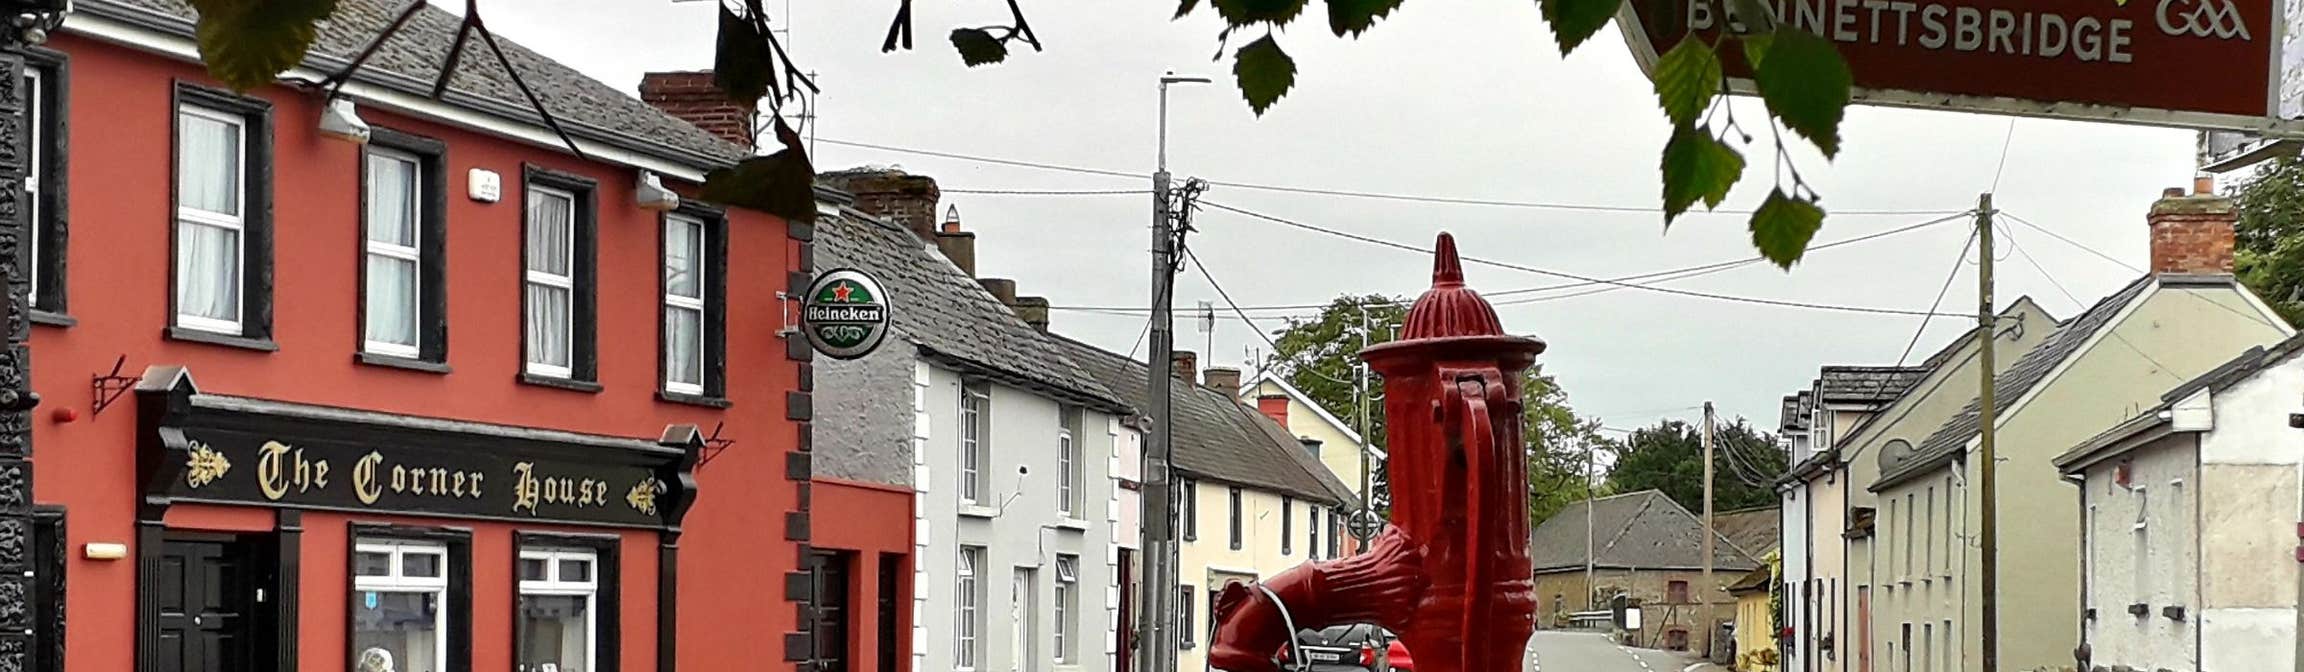 Image of Bennettsbridge in County Kilkenny